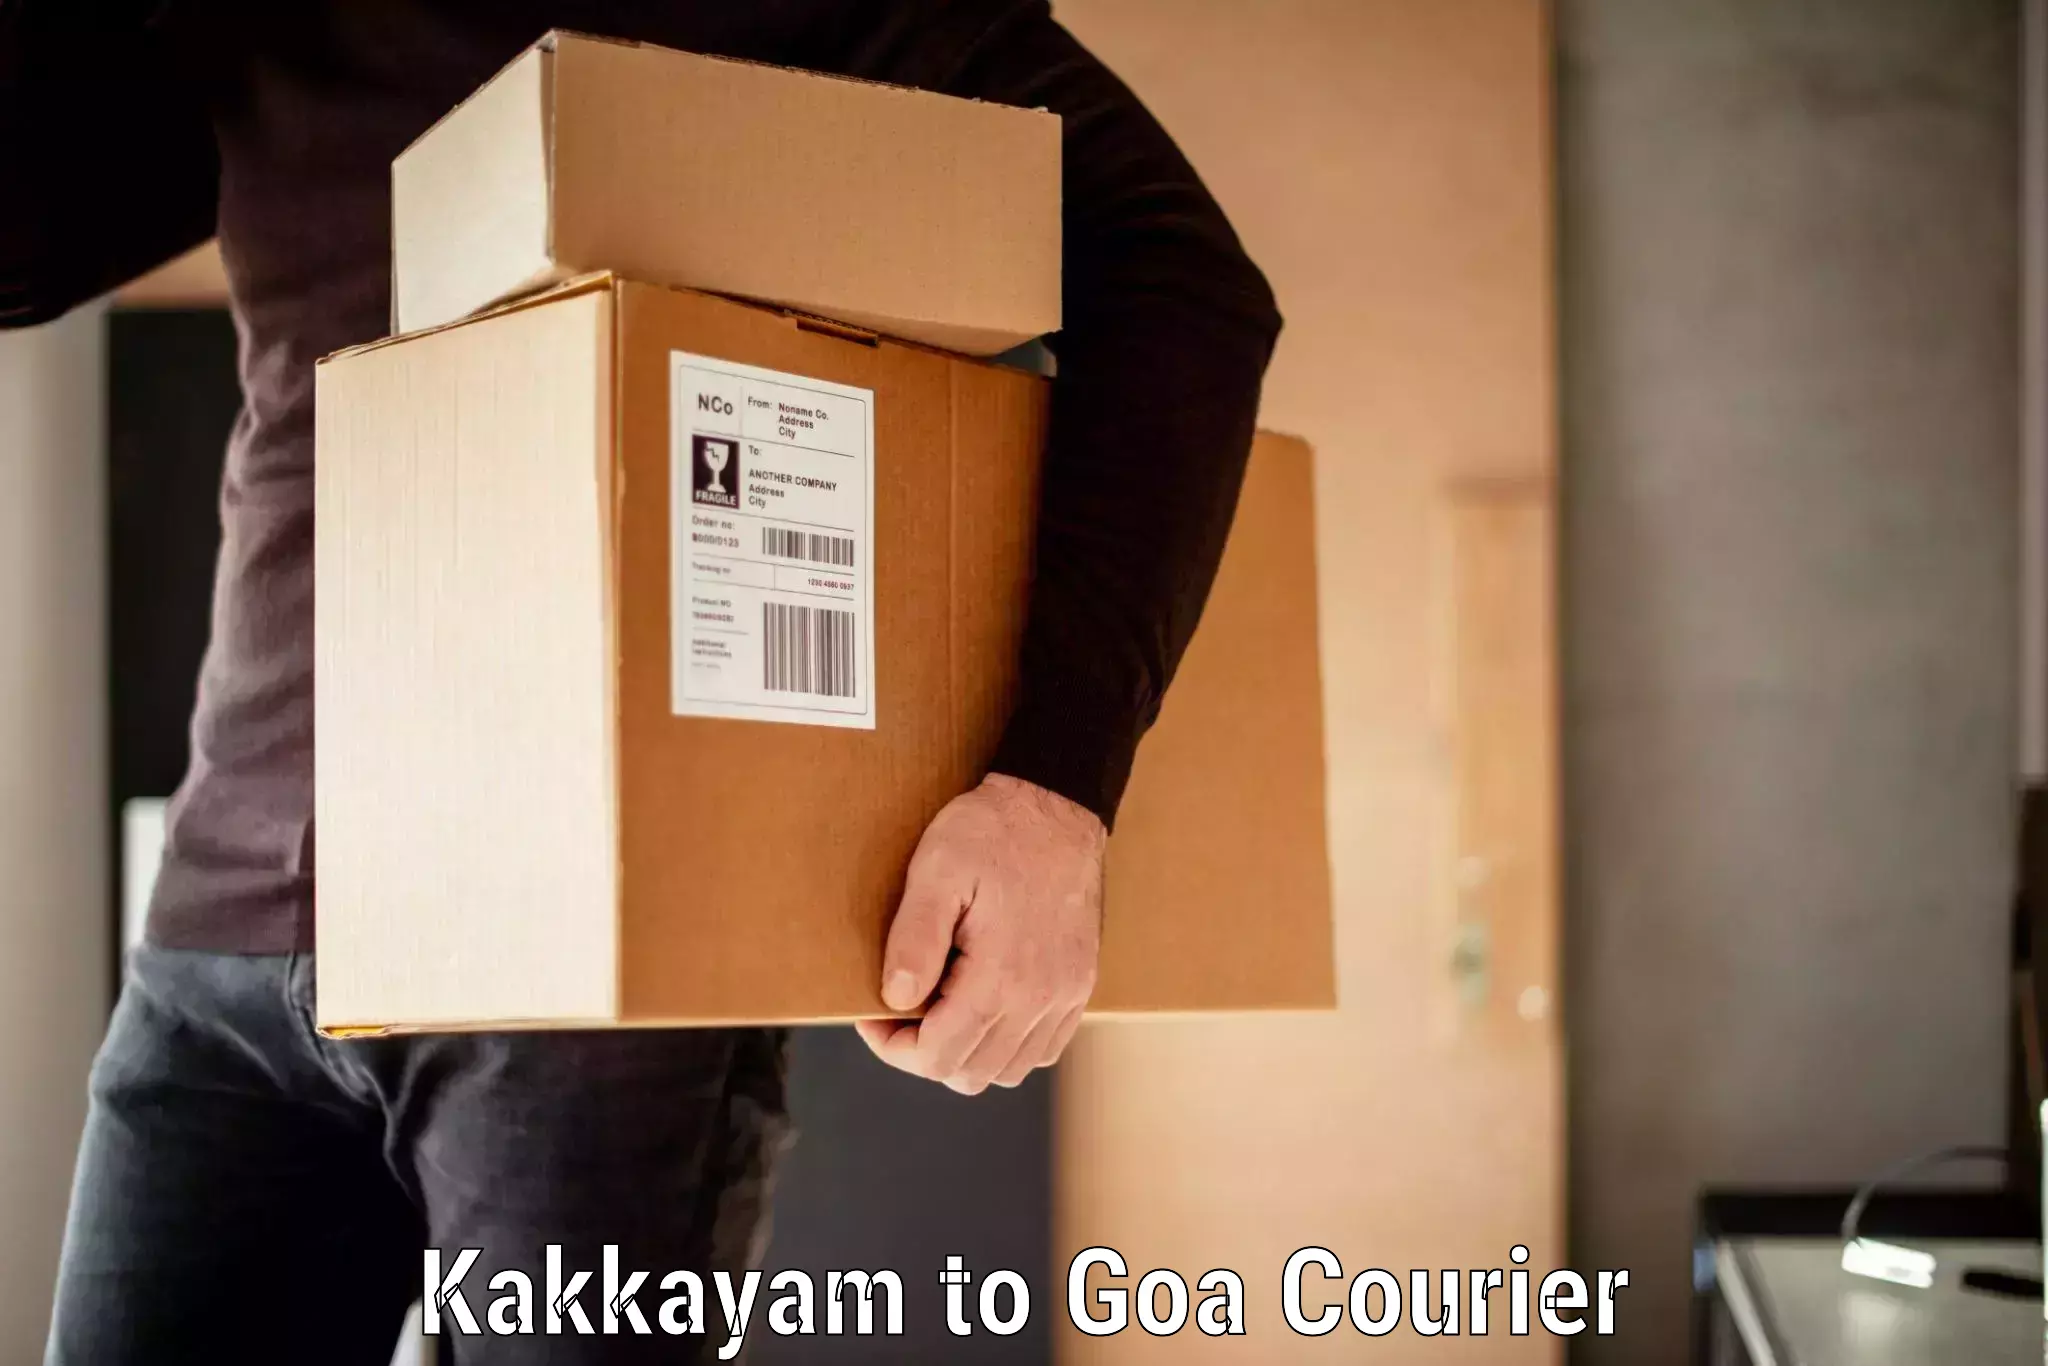 Luggage transport service Kakkayam to NIT Goa